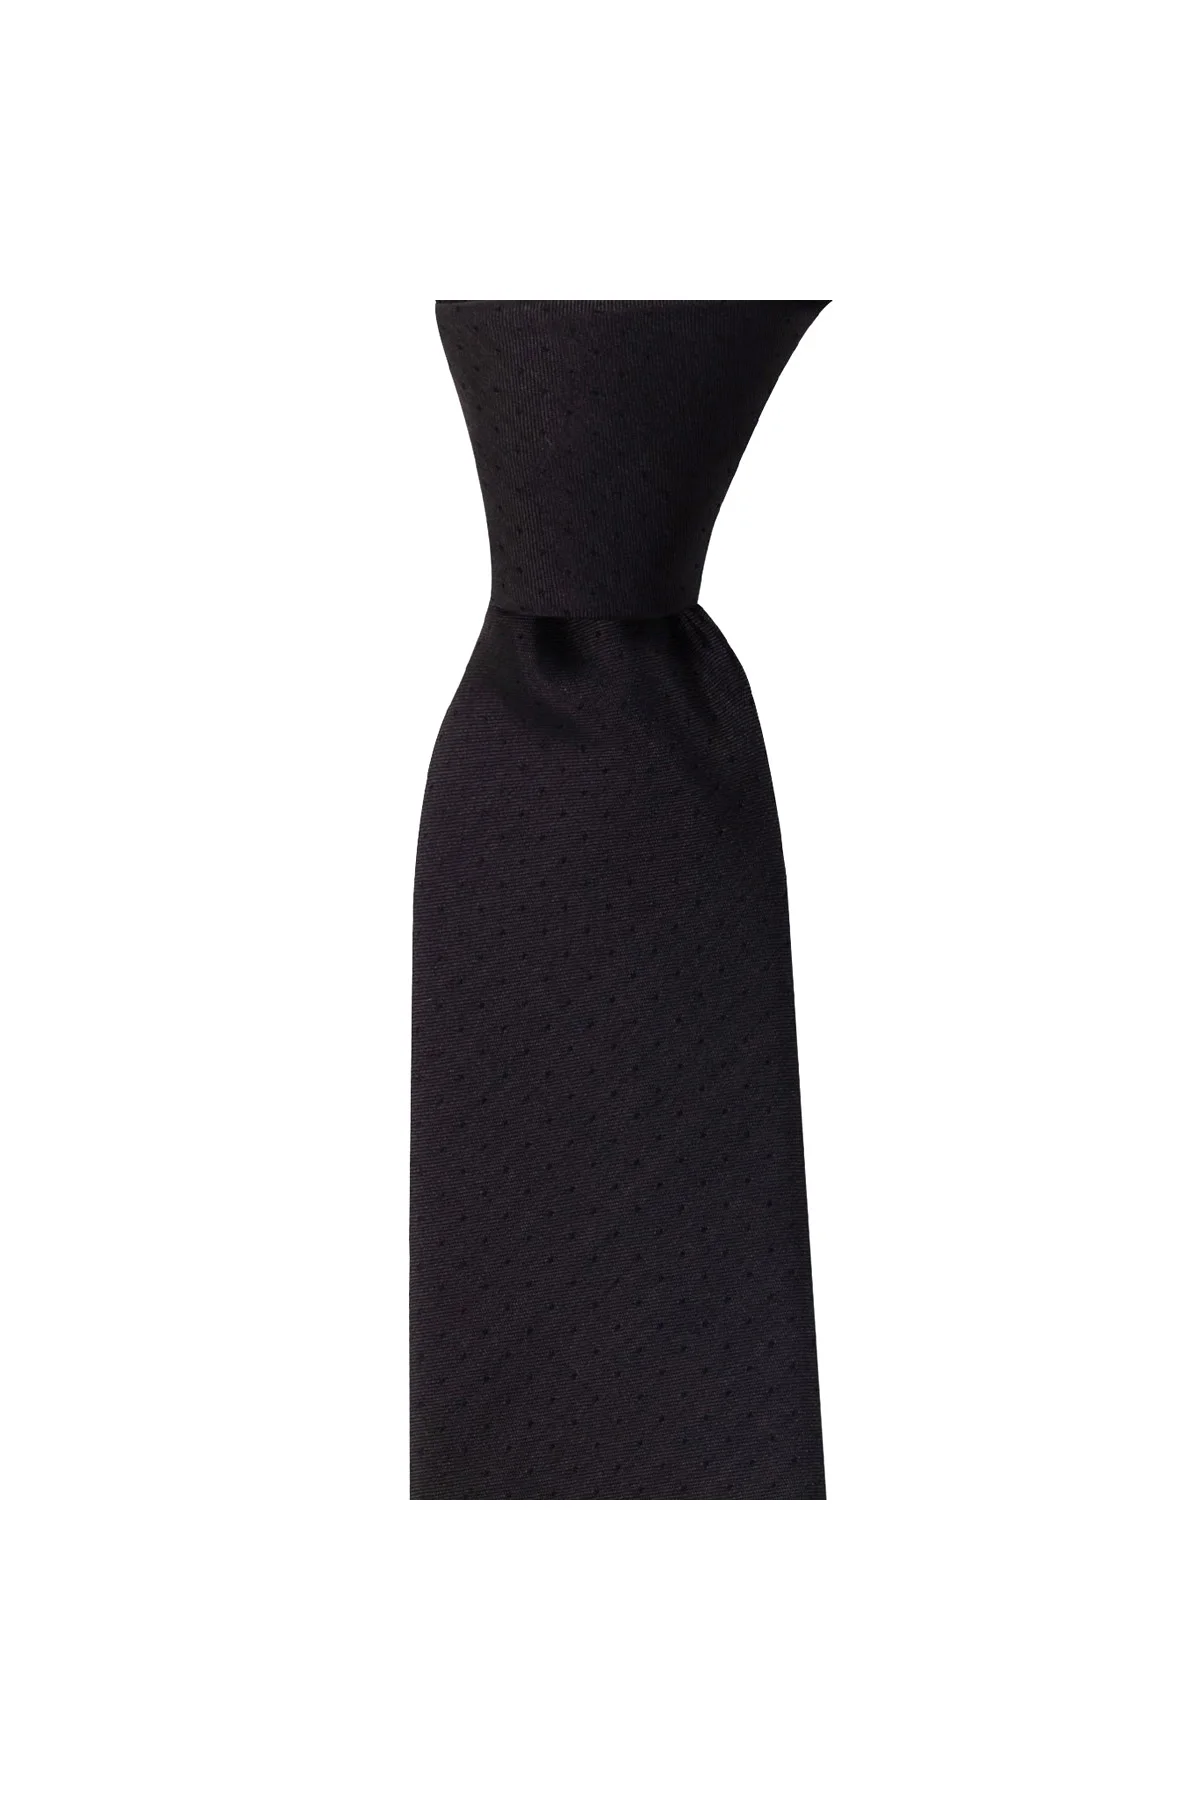 Мужской галстук современного дизайна, Сделано в Италии, Ширина 7,5 см, длина 145 см, отличный наряд с классическими мужскими костюмами